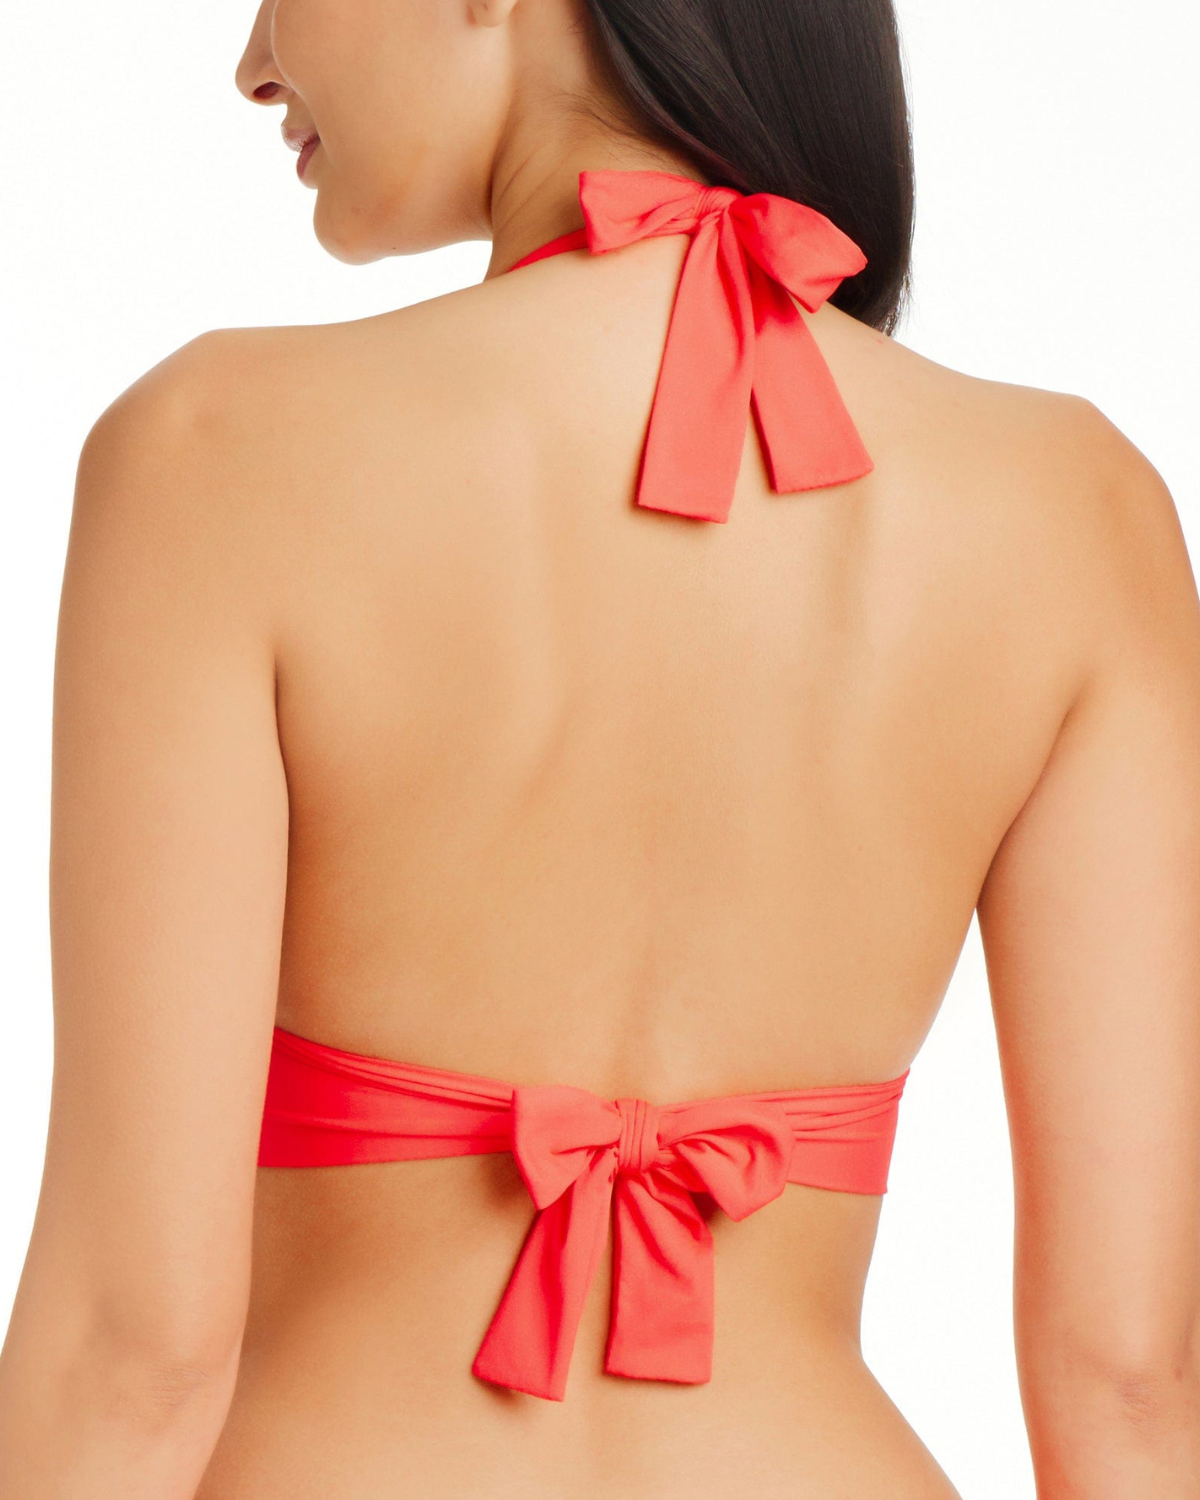 Model wearing a halter bikini top in coral